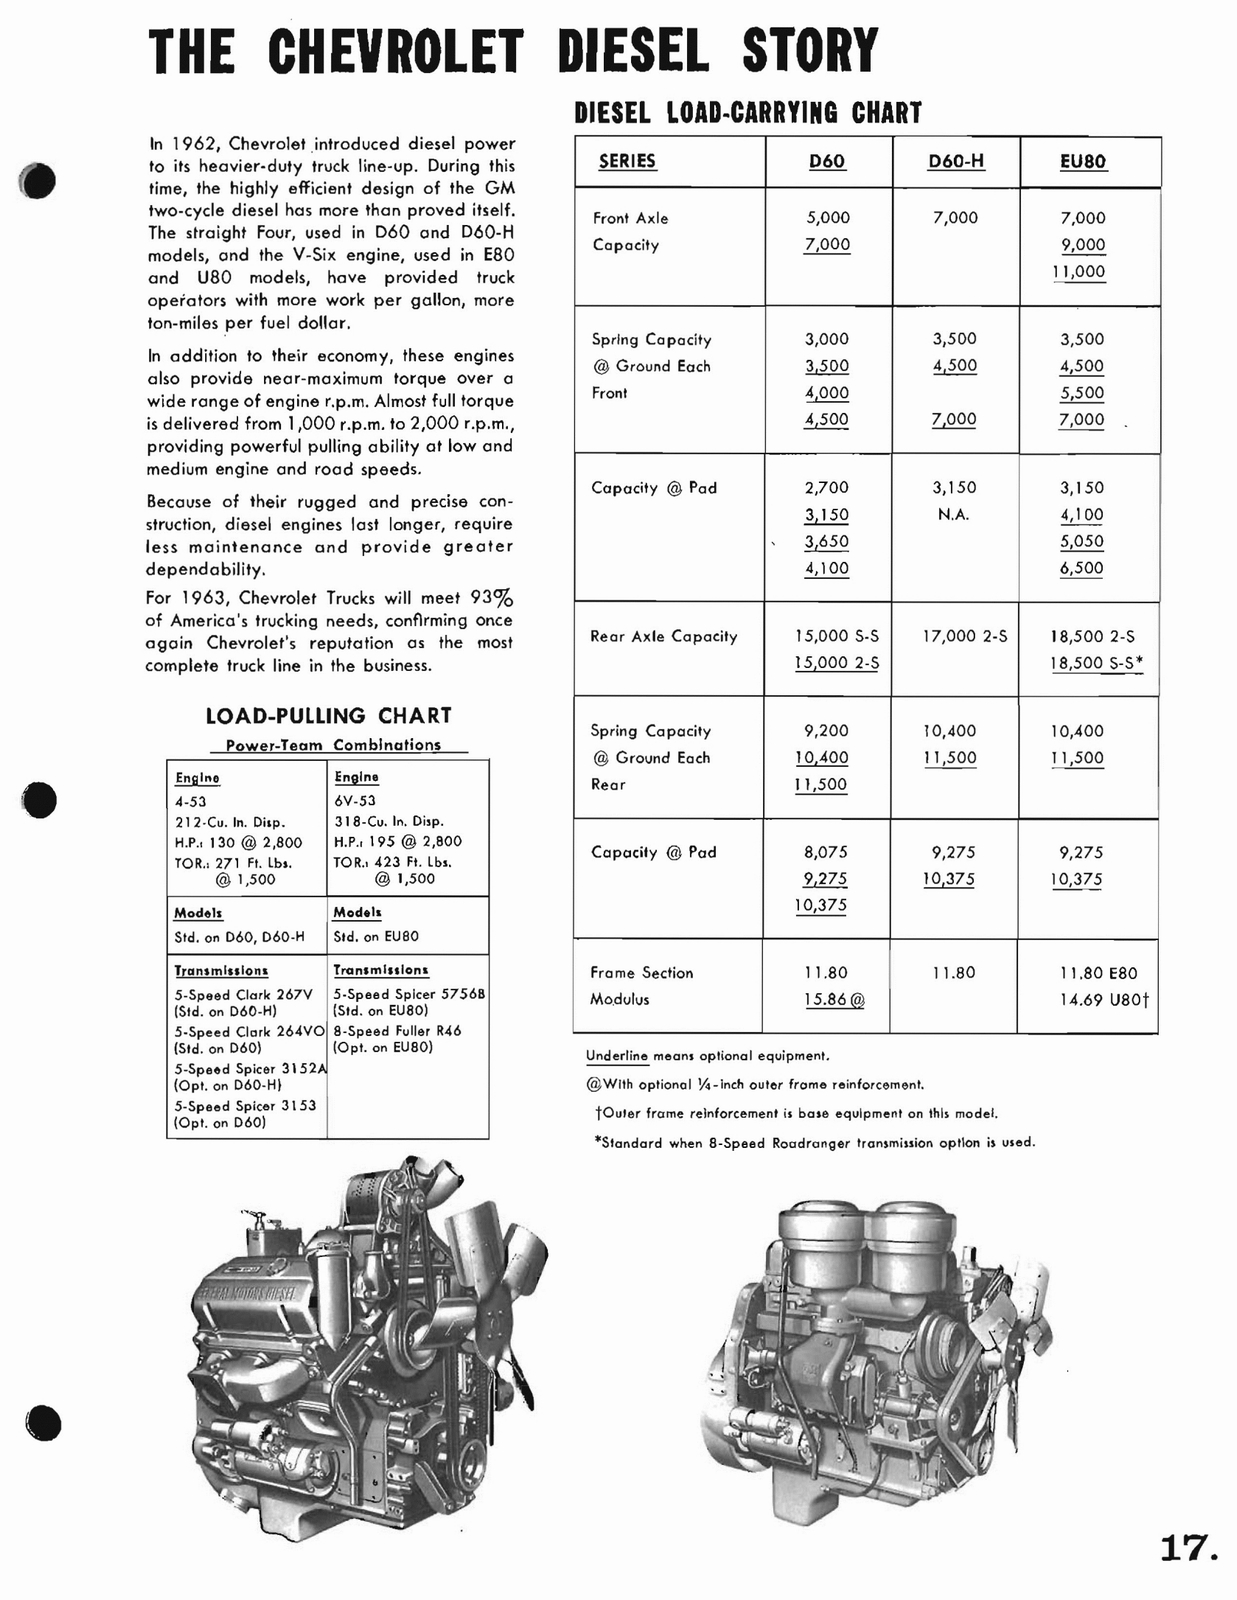 n_1963 Chevrolet Trucks Booklet-17.jpg